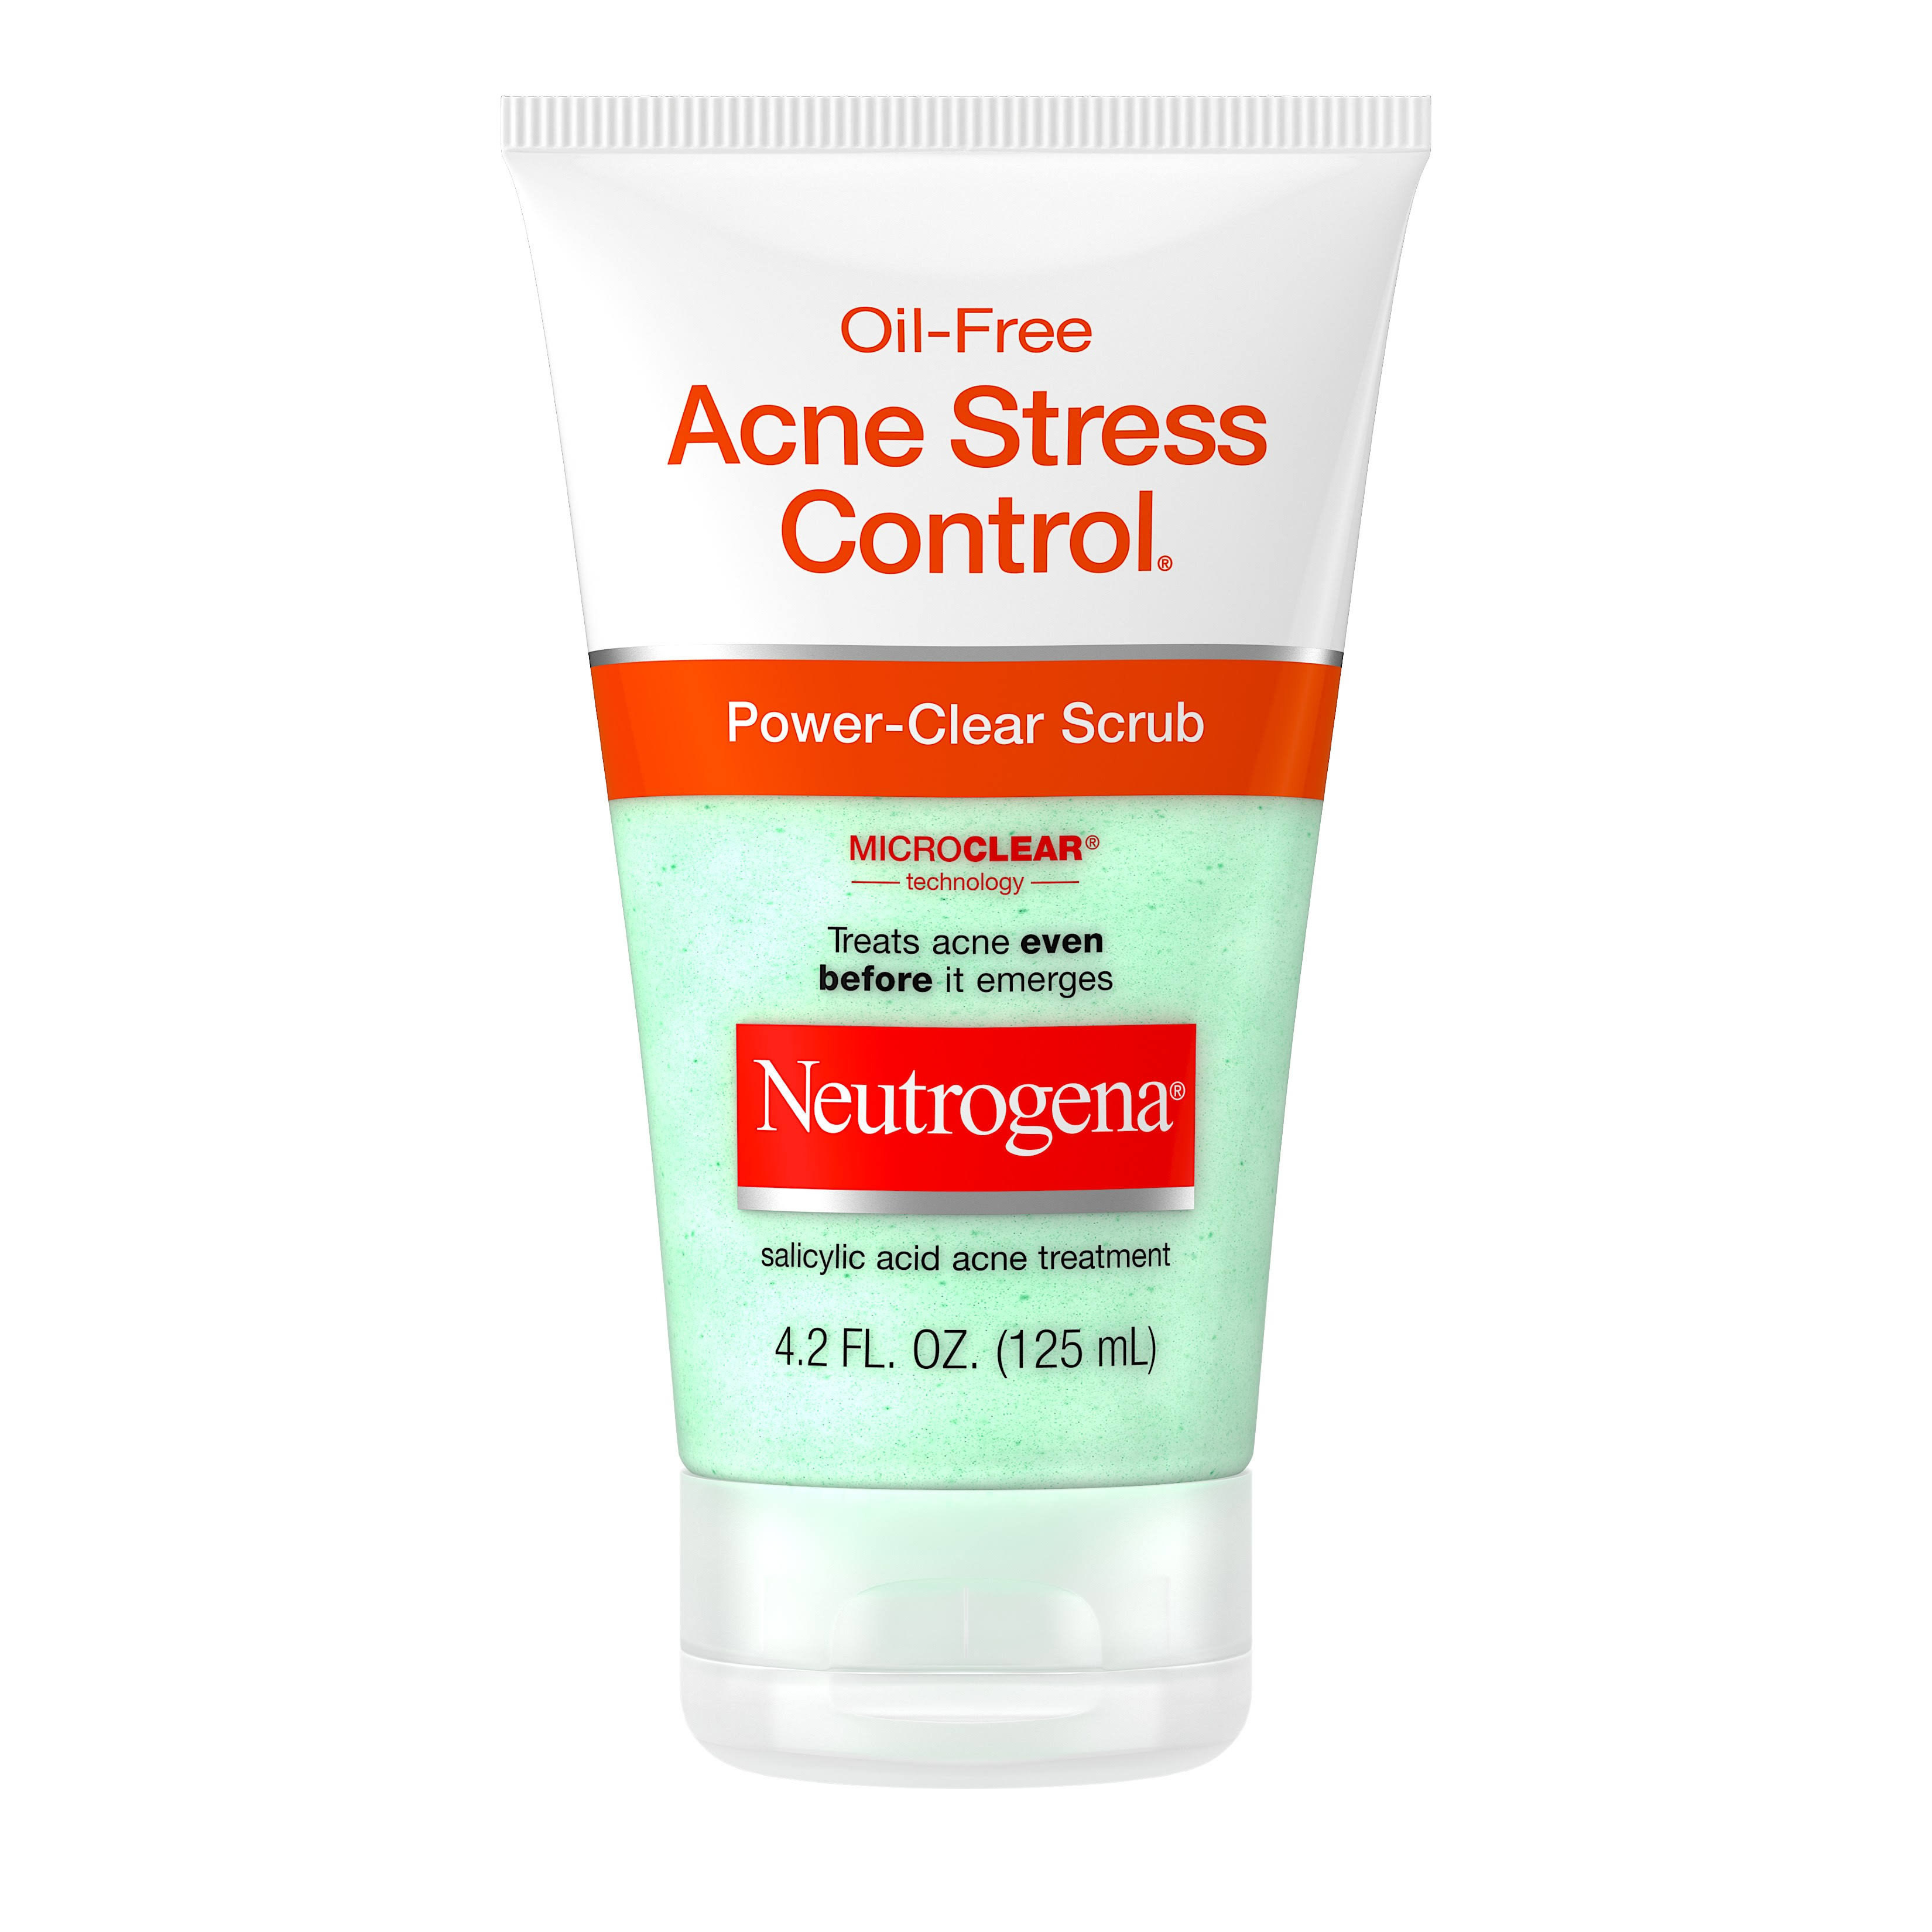 Neutrogena Acne Stress Control Power-Clear Scrub - 4.2oz